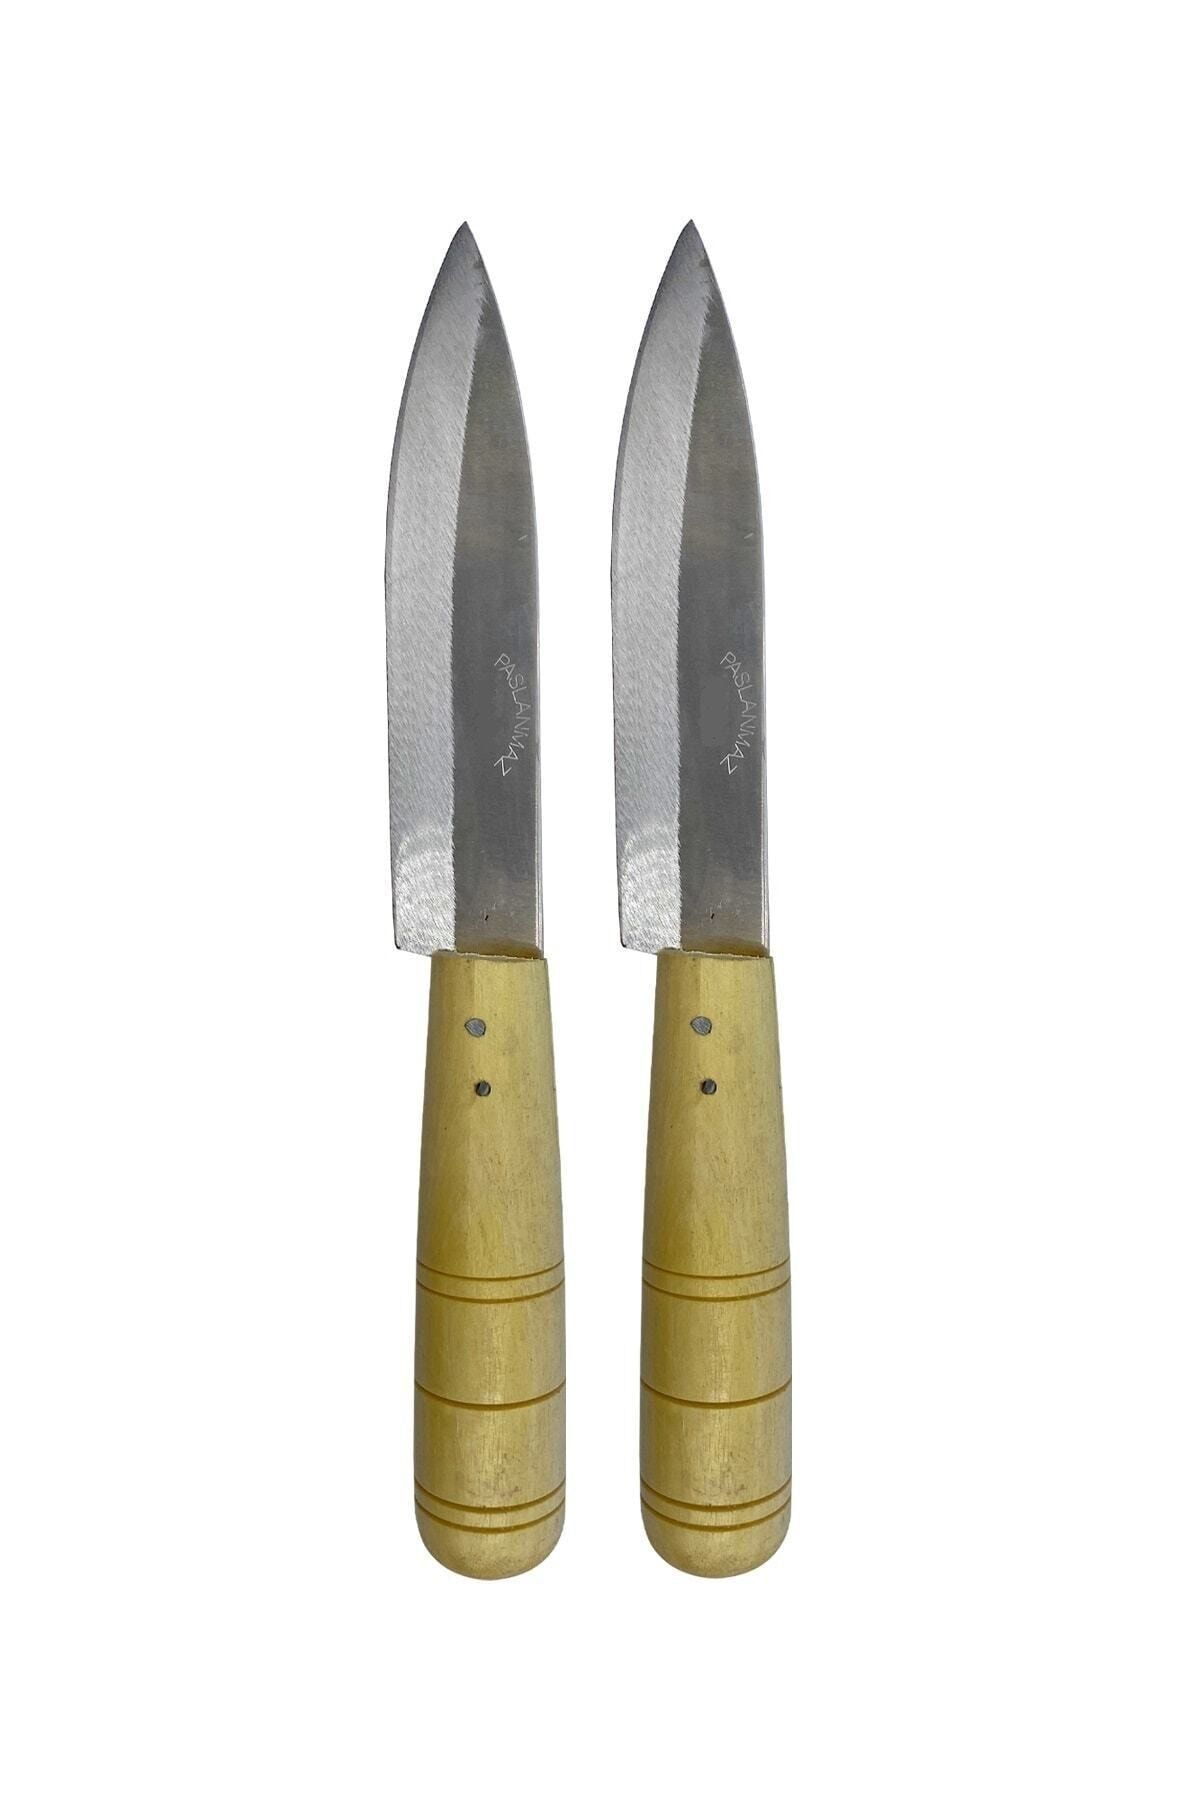 GÜZELYÜZ AVM Antakya Bıçağı Naim Bıçak Ahşap Saplı Mutfak Bıçağı Orta Boy 2 Adet 22cm Keskin Kaliteli 1.sınıf